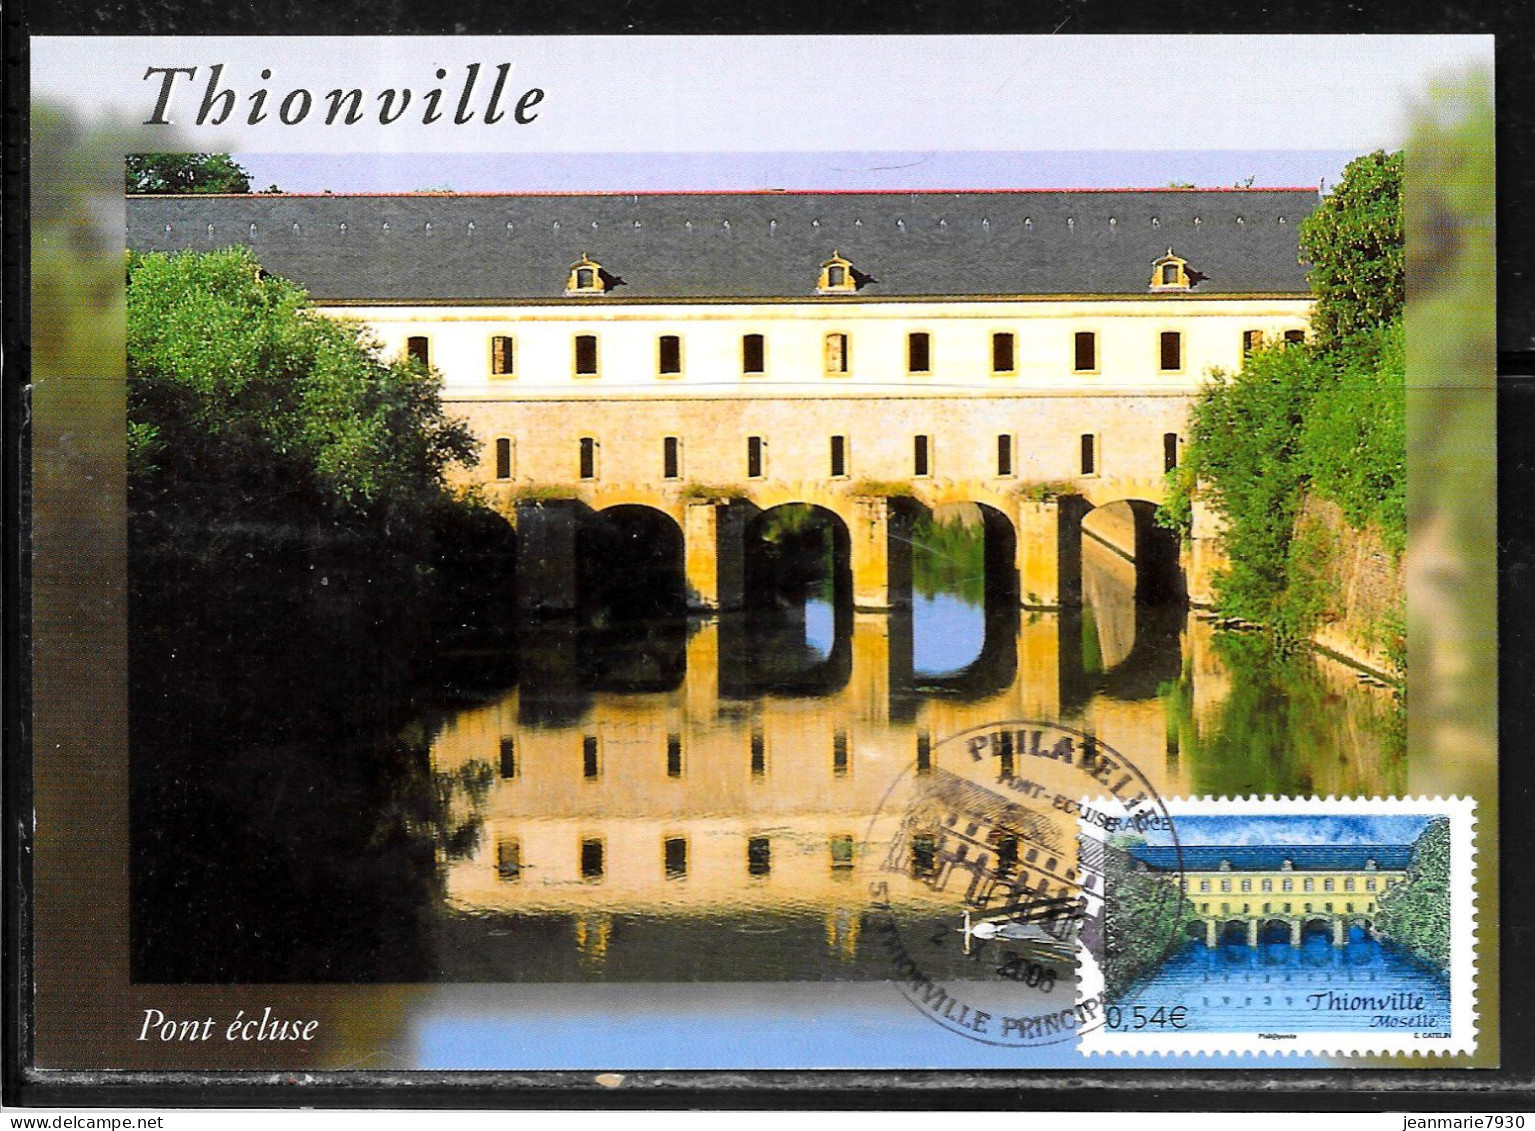 K204 - N° 3952 SUR CP DE THIONVILLE DU 02/10/06 - Commemorative Postmarks